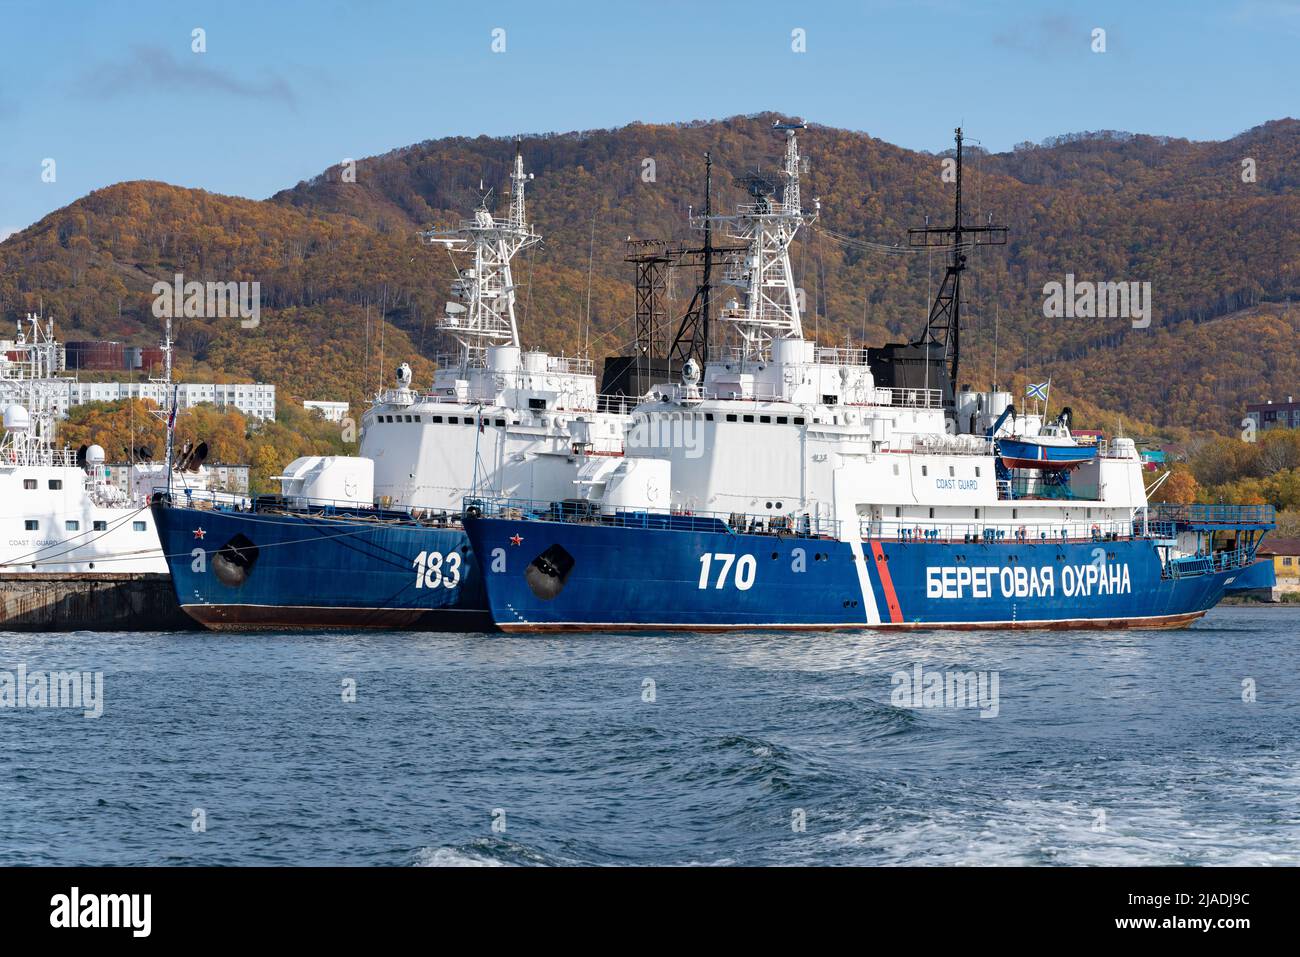 Les navires de guerre de la Garde côtière du Service des frontières du Service fédéral de sécurité de la Russie sont ancrés au quai dans le port maritime de la ville de Petropavlovsk-Kamchatsky. Océan Pacifique Banque D'Images